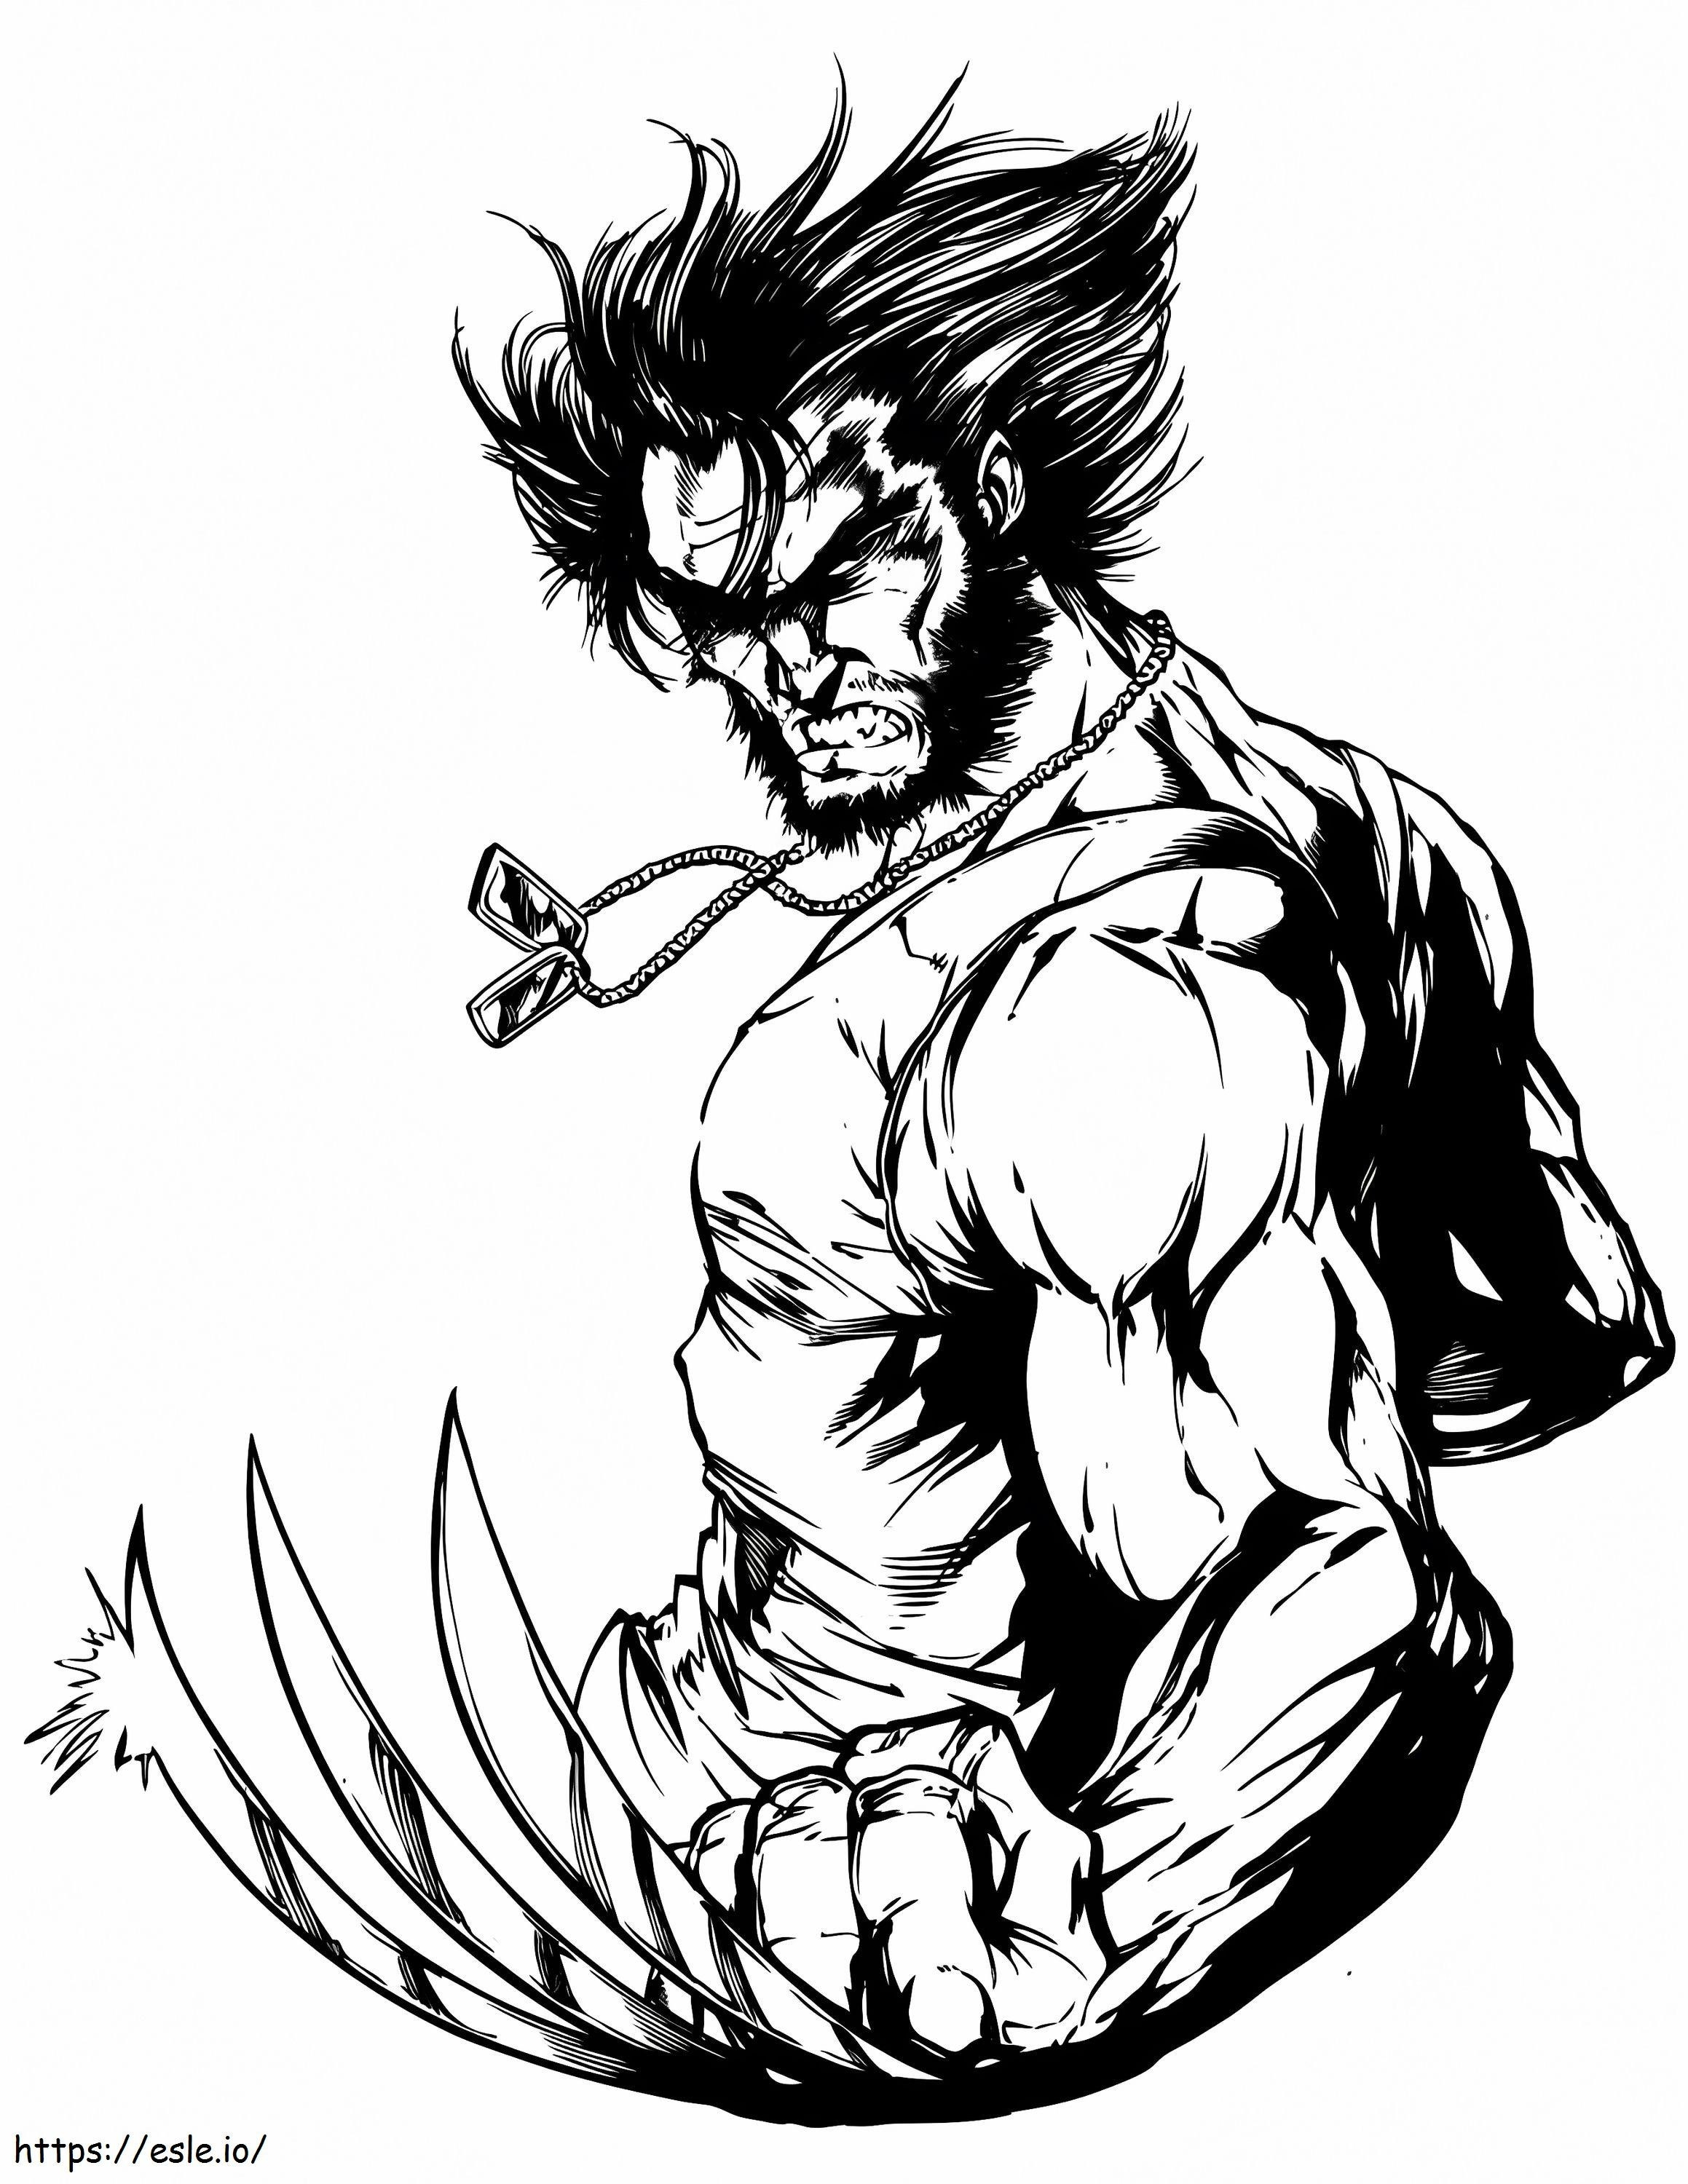 Wolverine wygląda na wściekłego kolorowanka